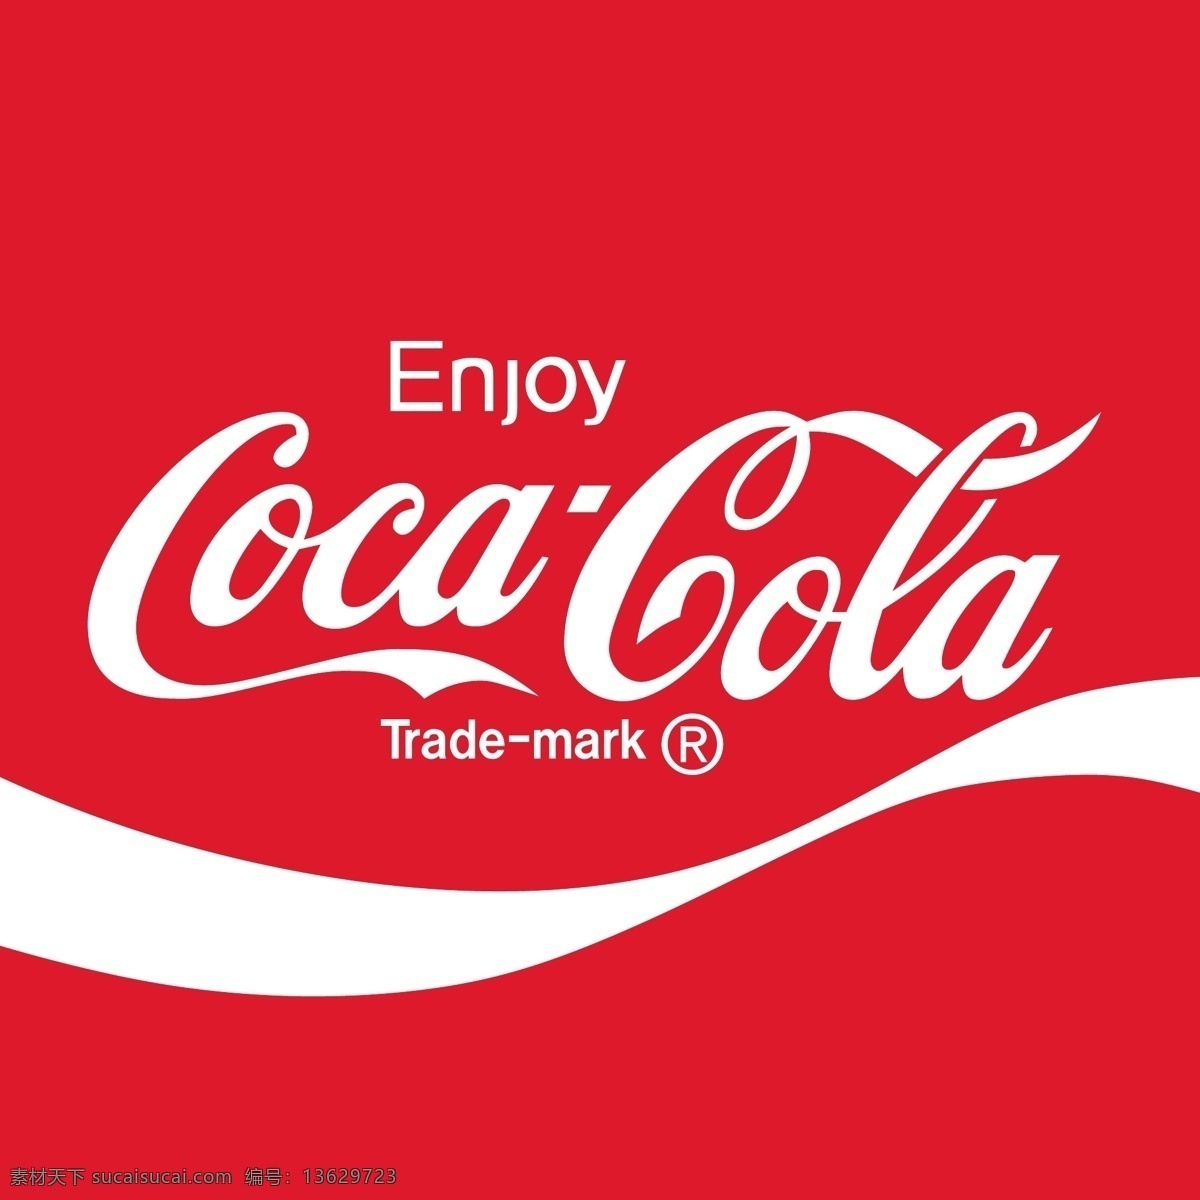 可口可乐 免费 标志 自由 psd源文件 logo设计